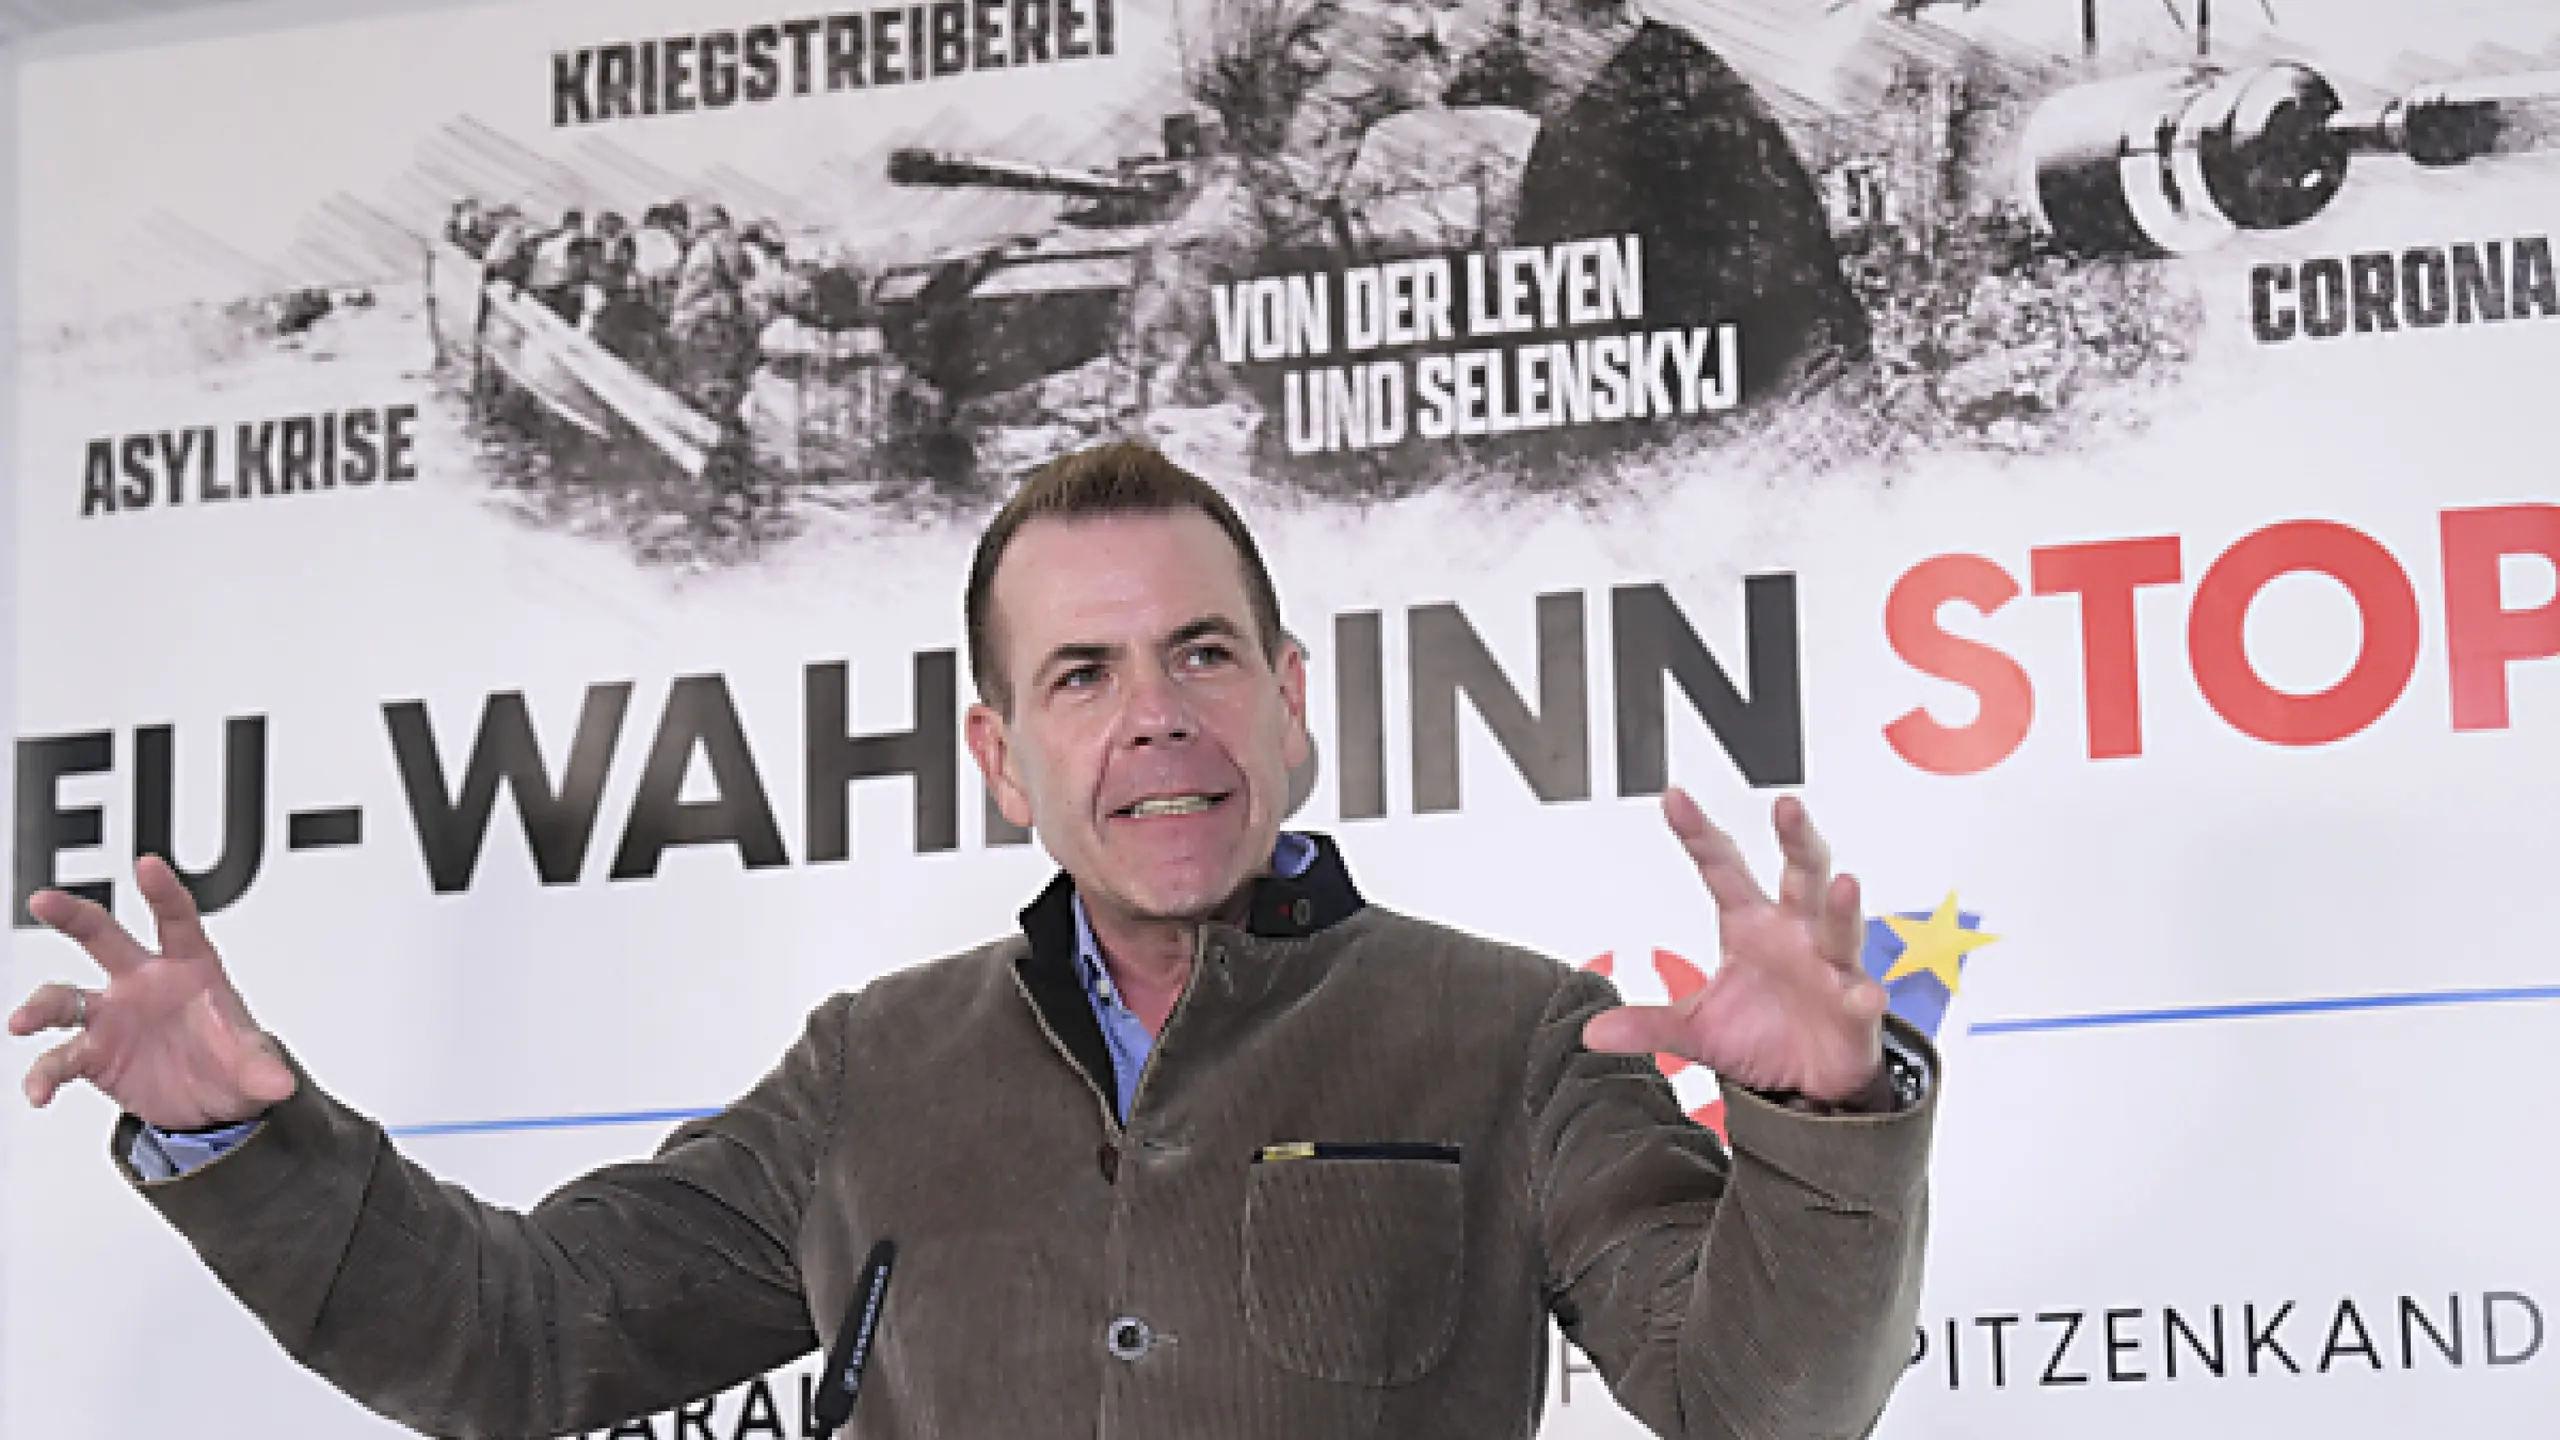 Spitzenkandidat Vilimsky will "Exit vom Wahnsinn"